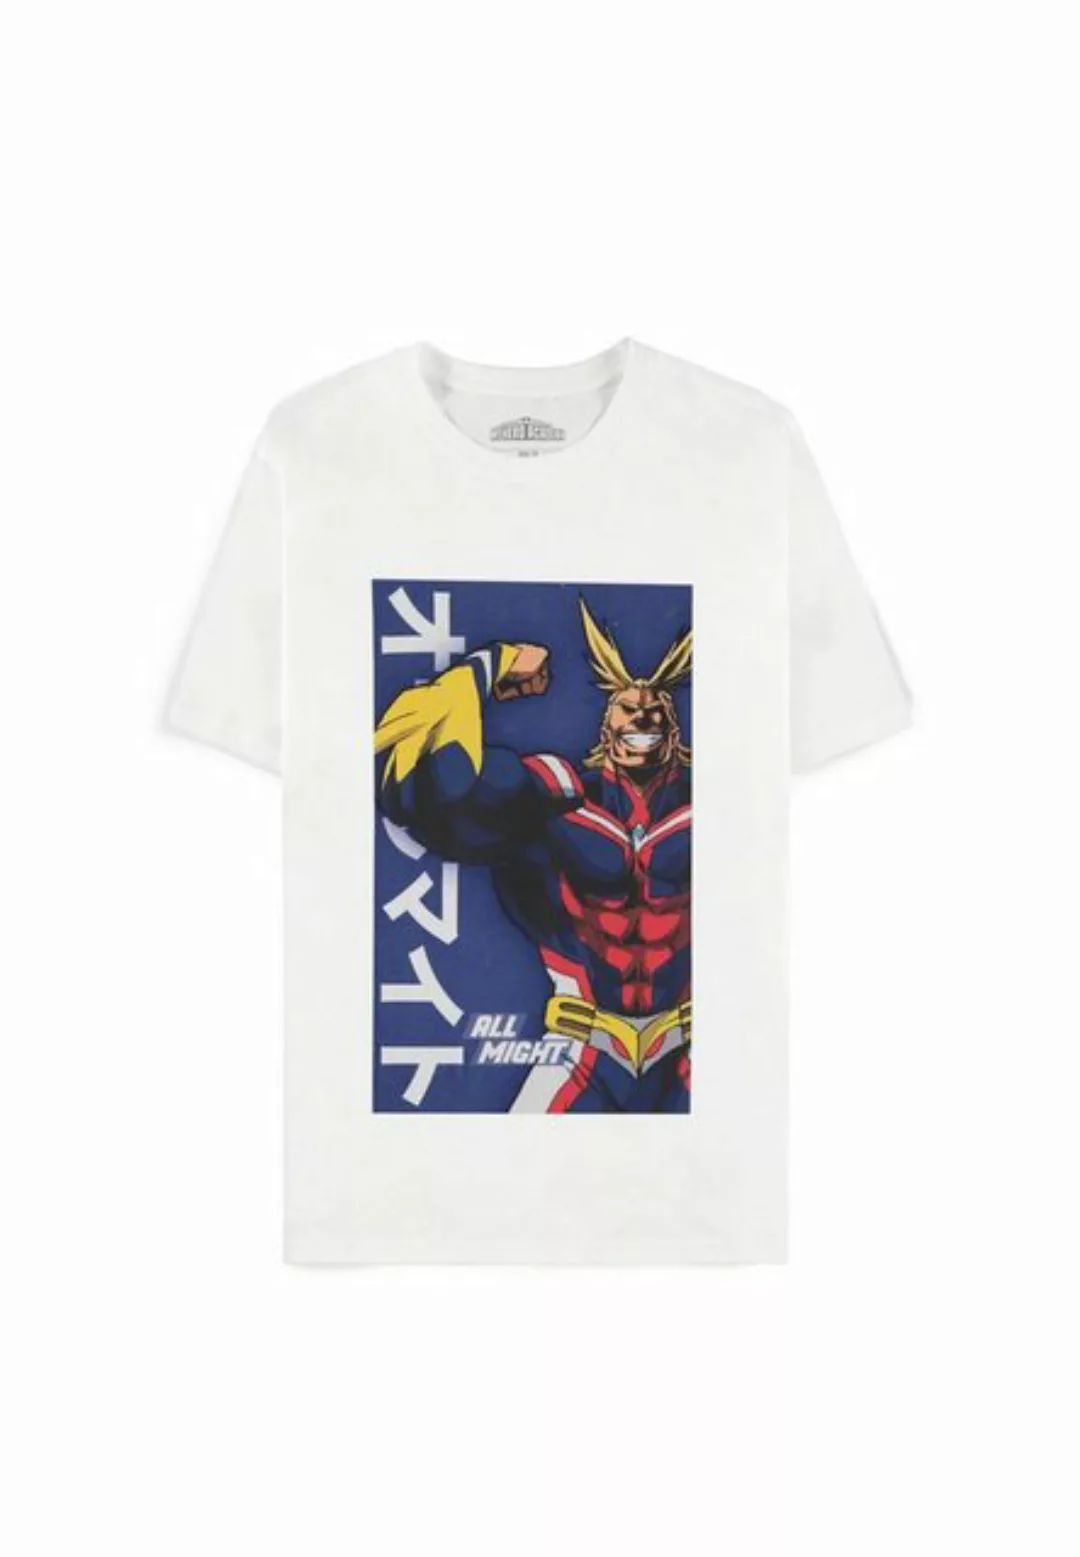 MY HERO ACADEMIA T-Shirt günstig online kaufen